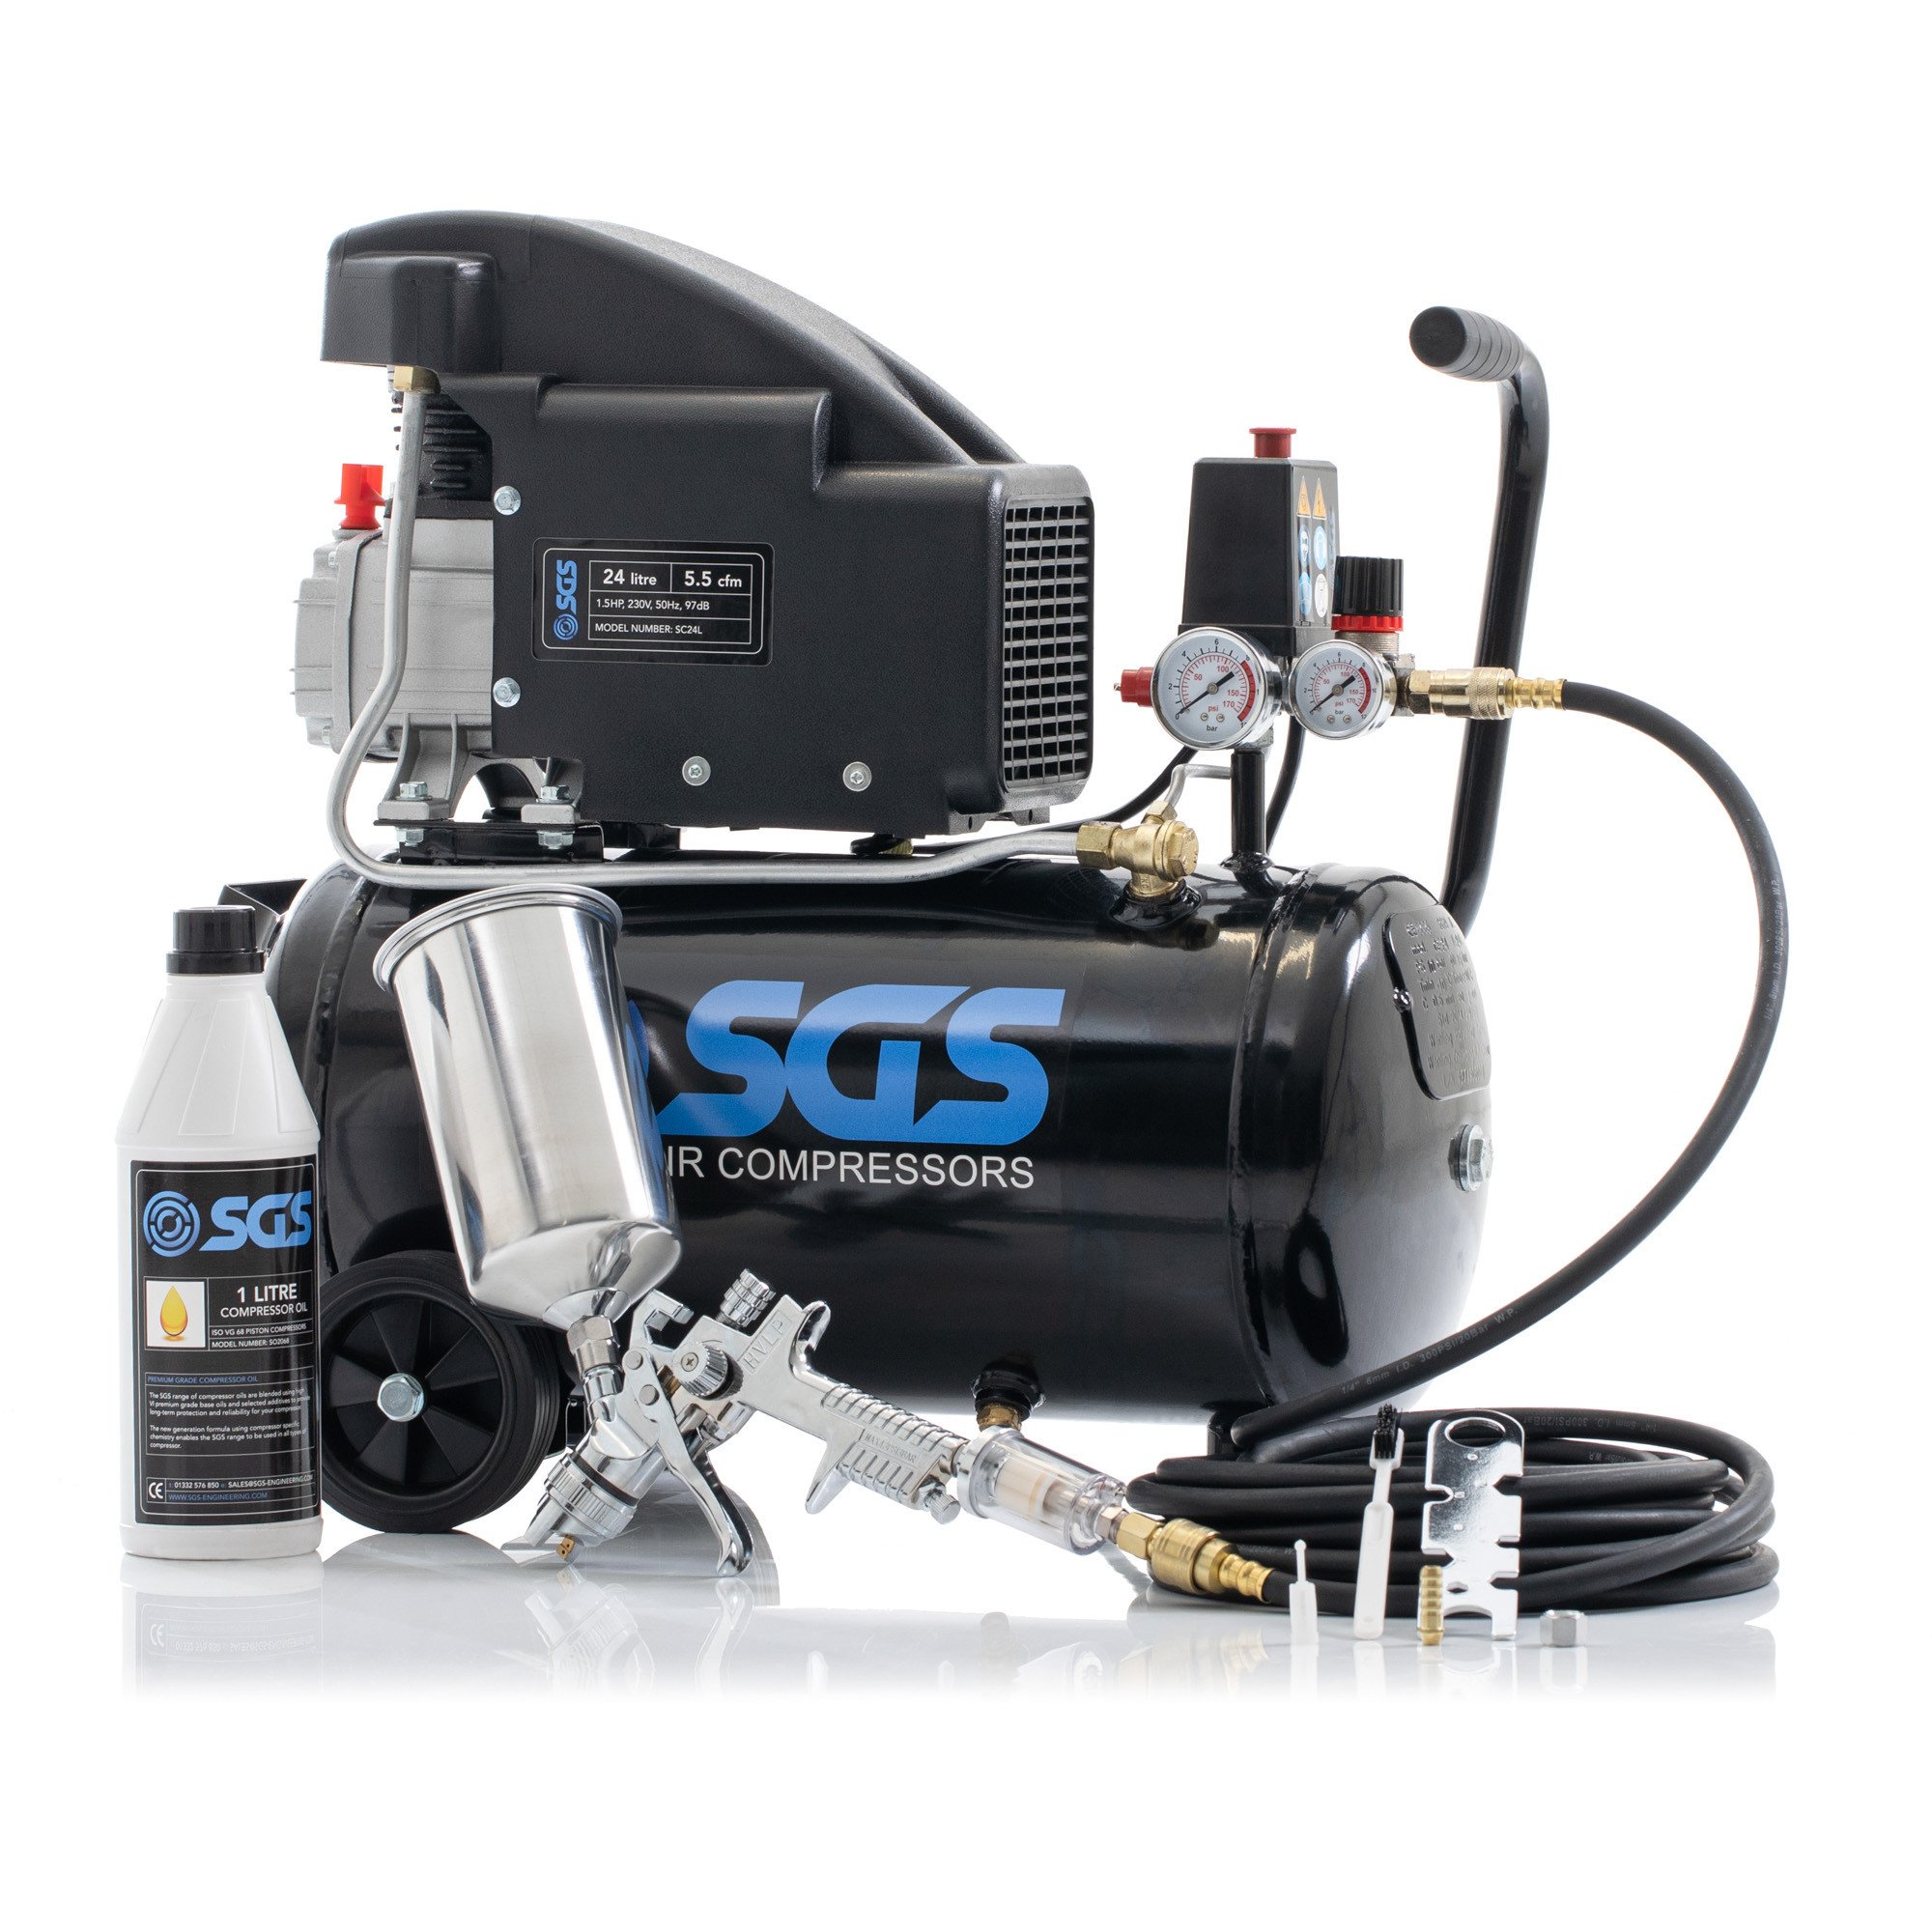 SGS 24升直接驱动空气压缩机和喷枪套件-5.5 CFM，1.5 hp